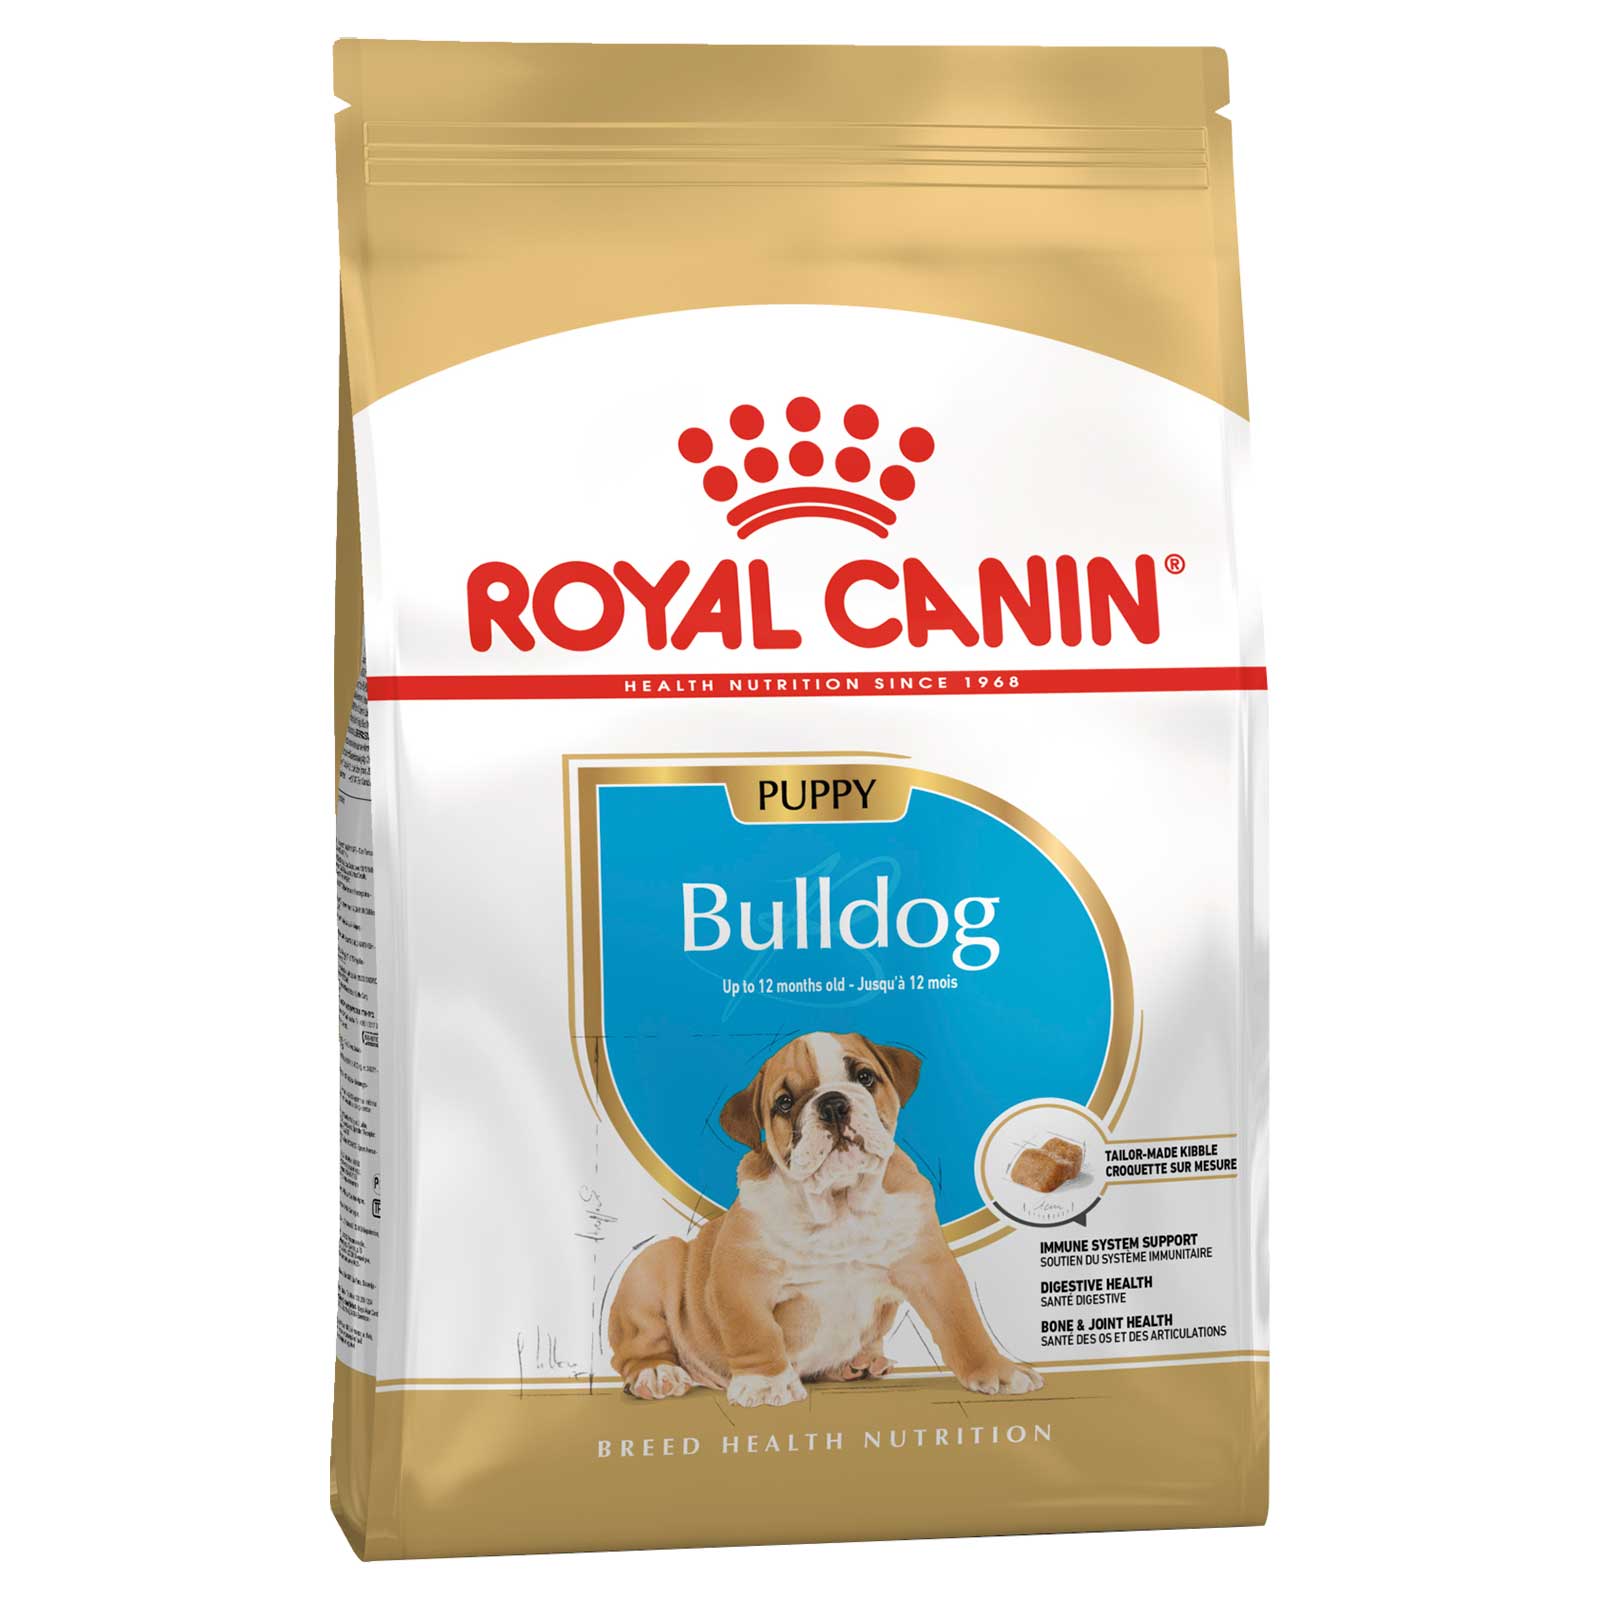 Royal Canin Dog Food Puppy Bulldog